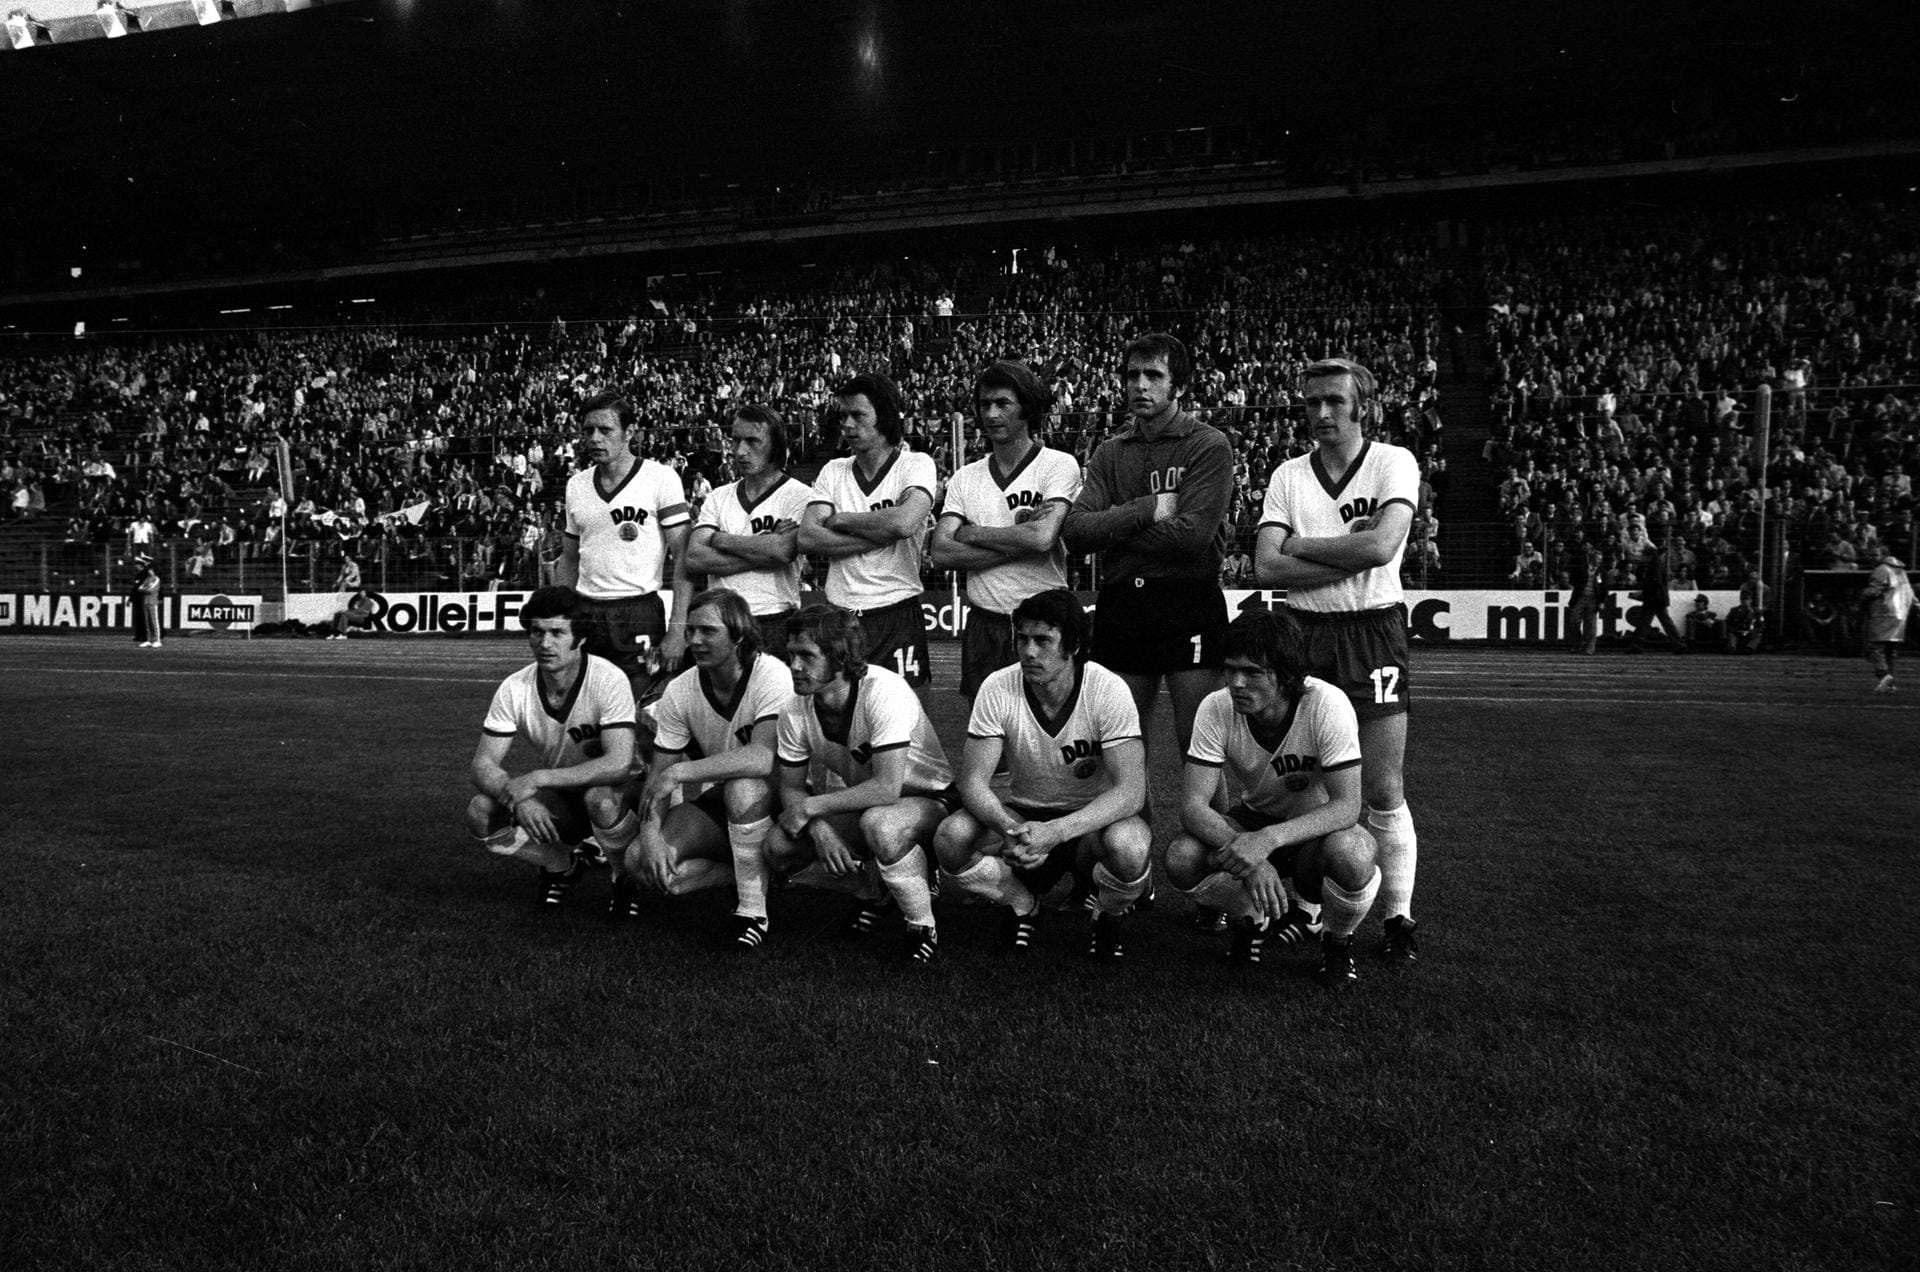 Die WM 1974: Streich (zweiter von links hinten) und sein DDR-Team trafen im Hamburger Volksparkstadion auf die BRD. Die Mannschaft der DDR gewann überraschend mit 1:0 durch ein Tor von Jürgen Sparwasser (rechts neben Streich).